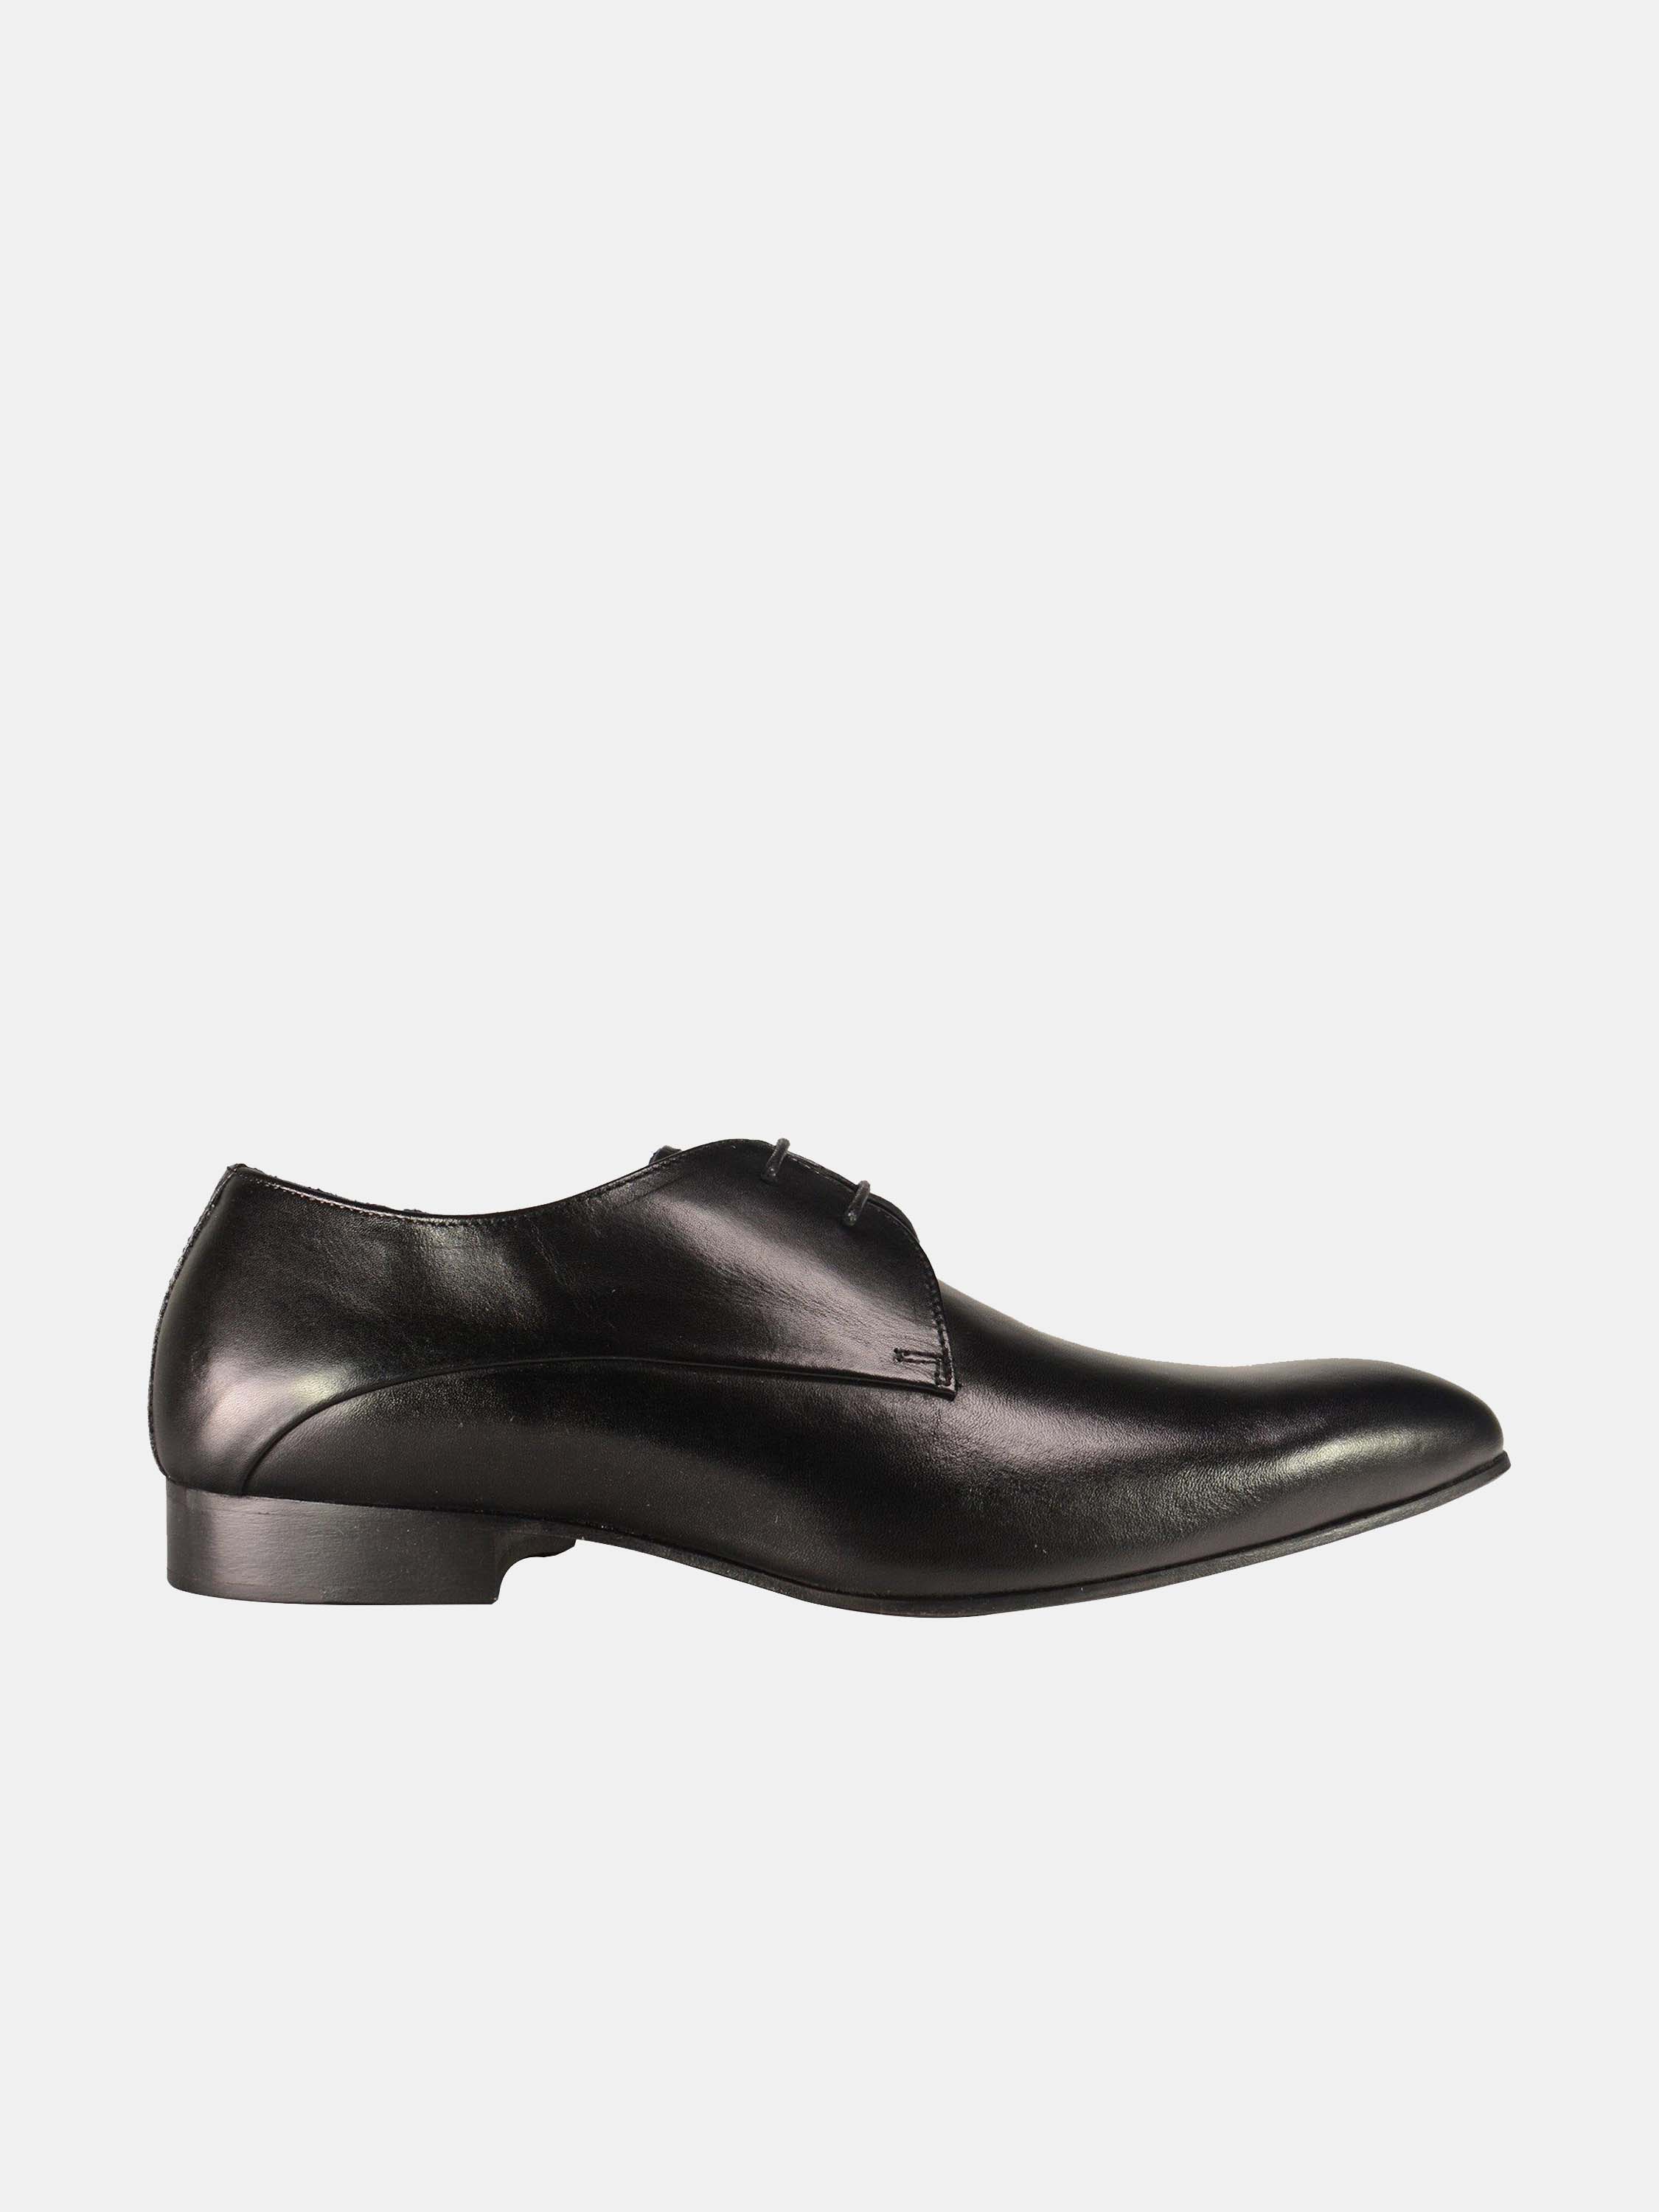 Franzini Men Formal Lace Up Leather Shoes #color_Black